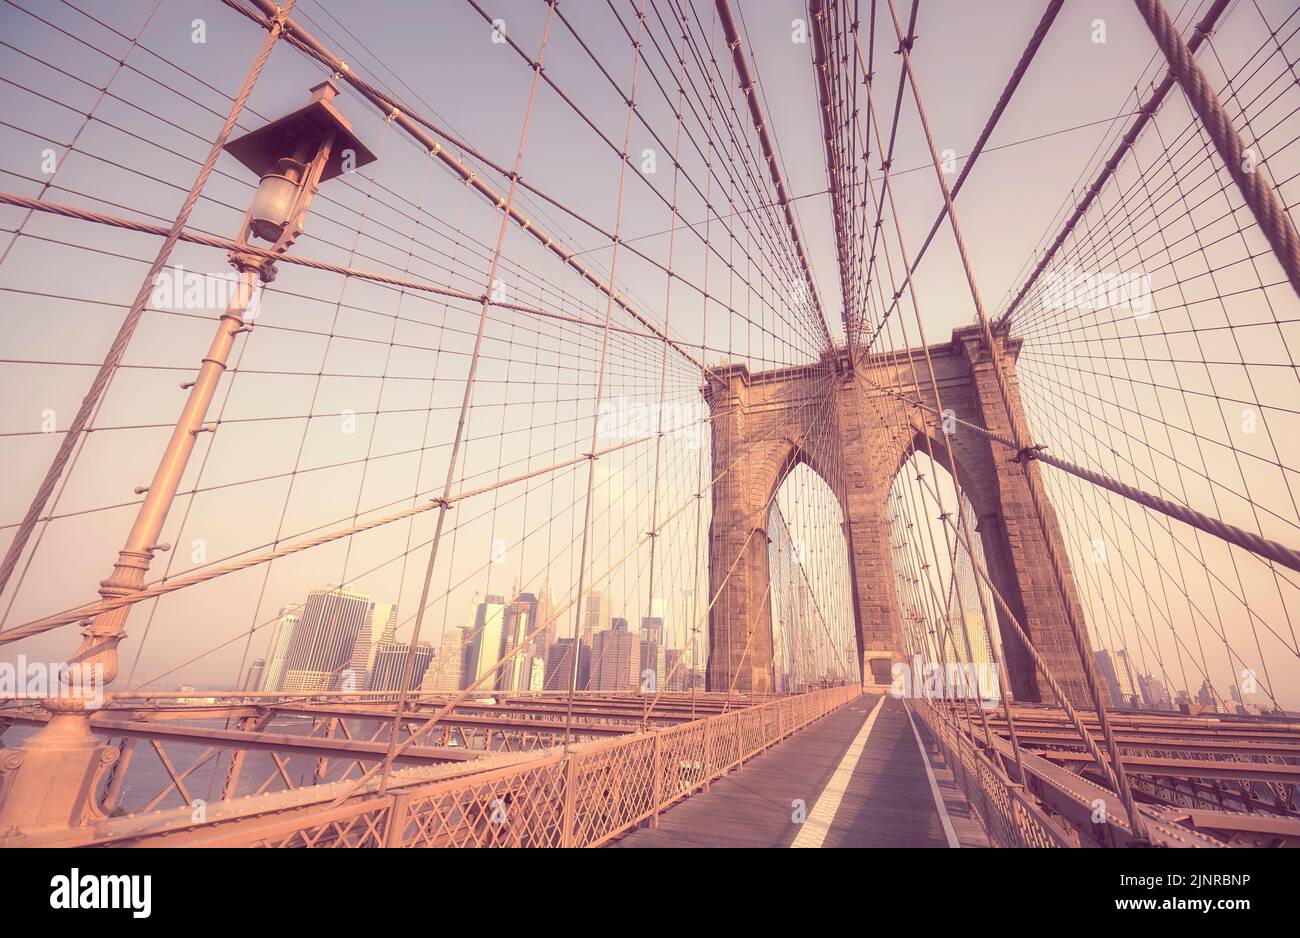 Imagen estilizada retro del Puente de Brooklyn, Nueva York, EE.UU. Foto de stock